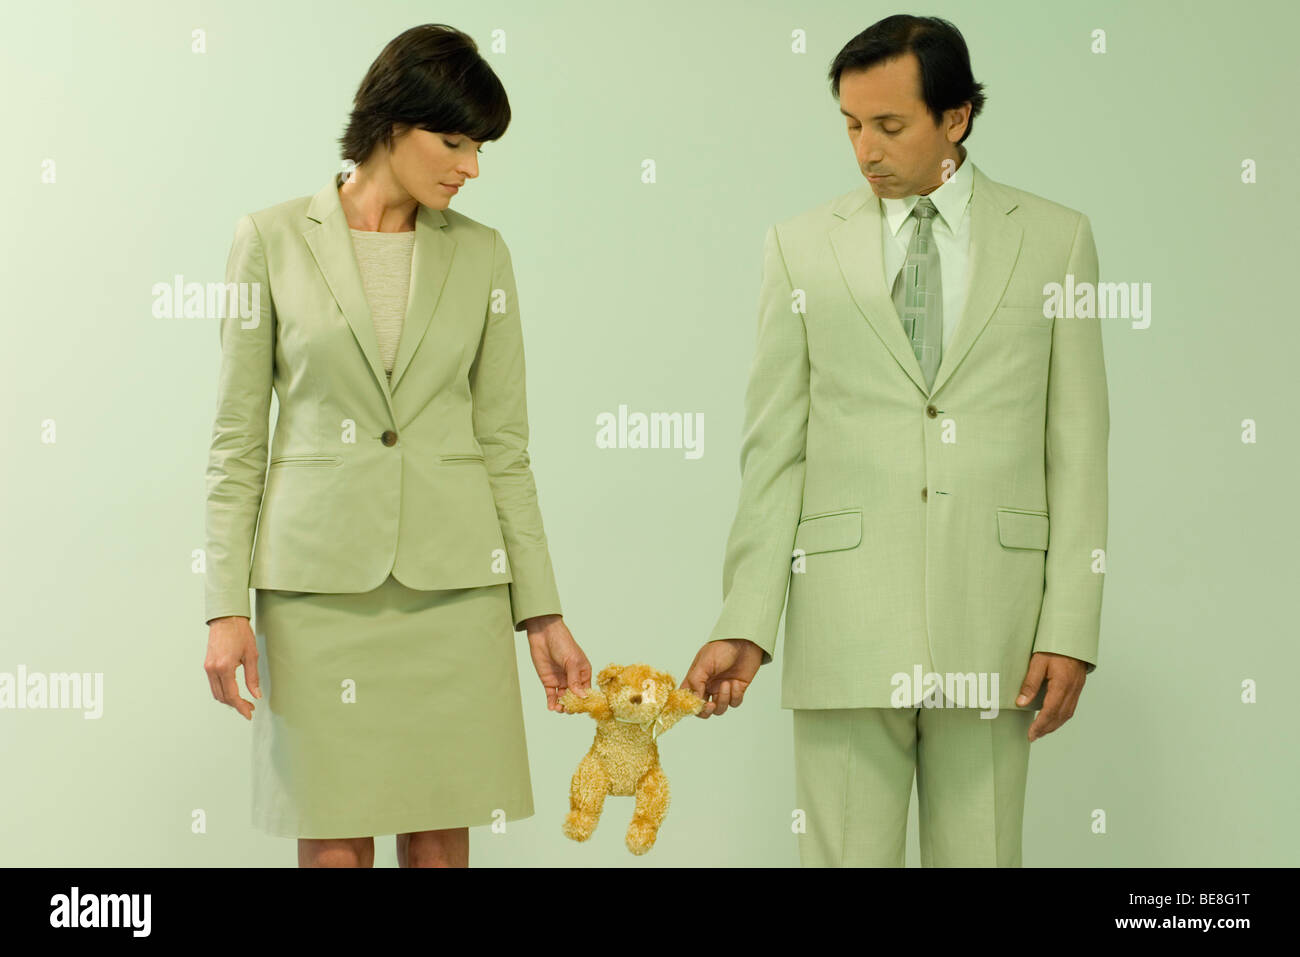 Professionelle paar stehen zusammen blickte auf Teddybär statt zwischen Ihnen Stockfoto